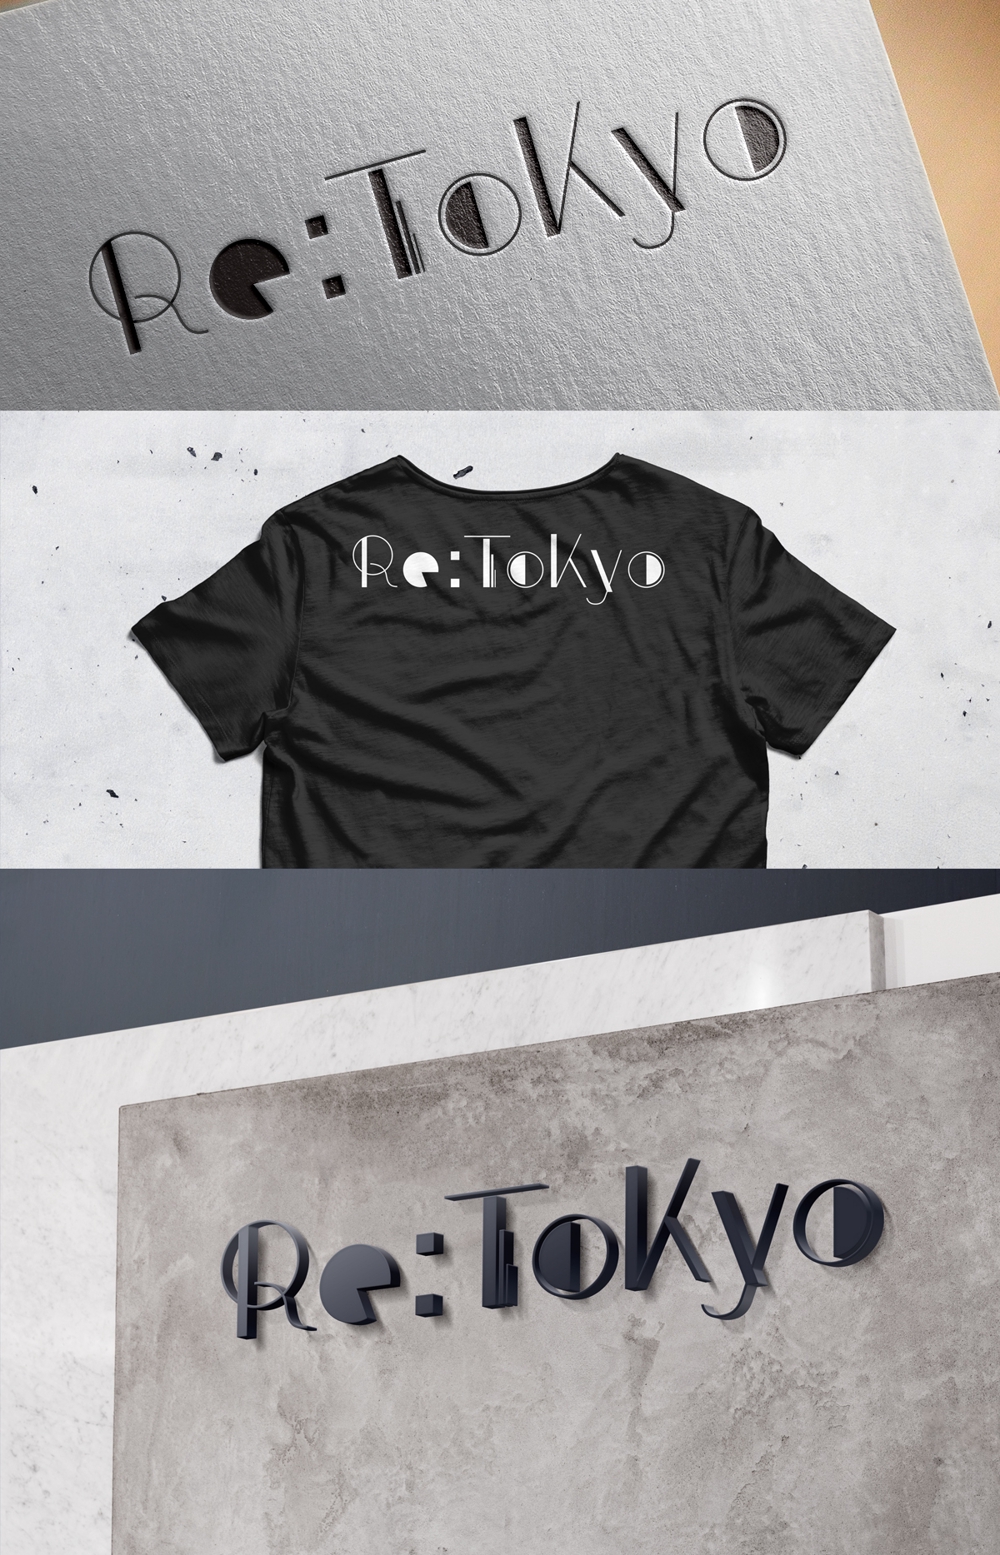 アパレルショップサイト「Re:Tokyo」のロゴ